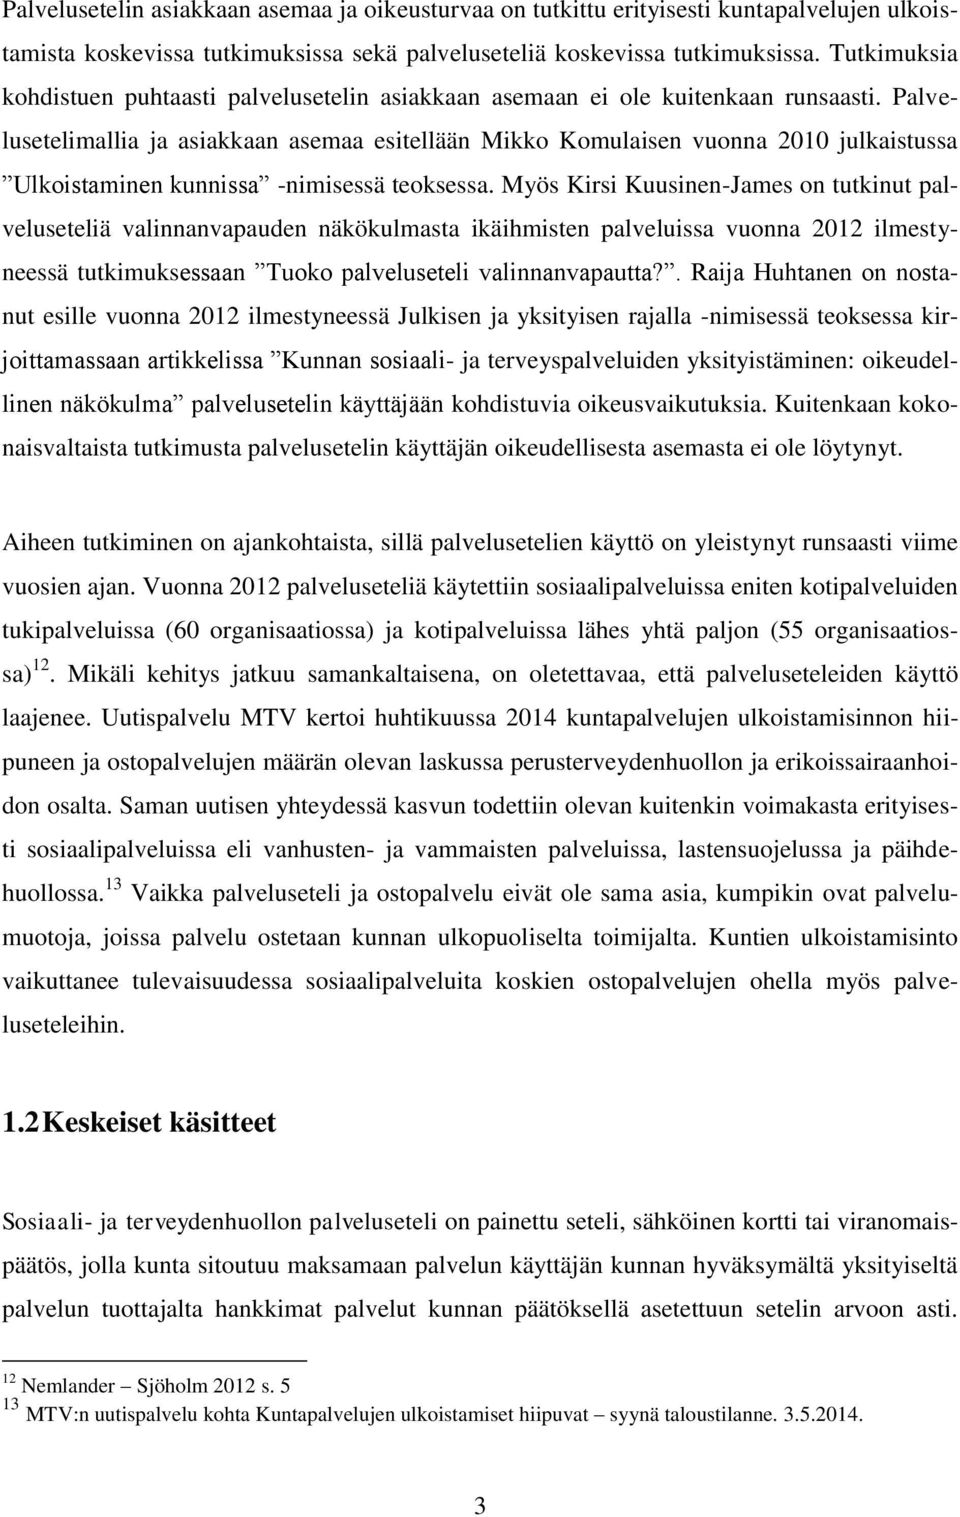 Palvelusetelimallia ja asiakkaan asemaa esitellään Mikko Komulaisen vuonna 2010 julkaistussa Ulkoistaminen kunnissa -nimisessä teoksessa.